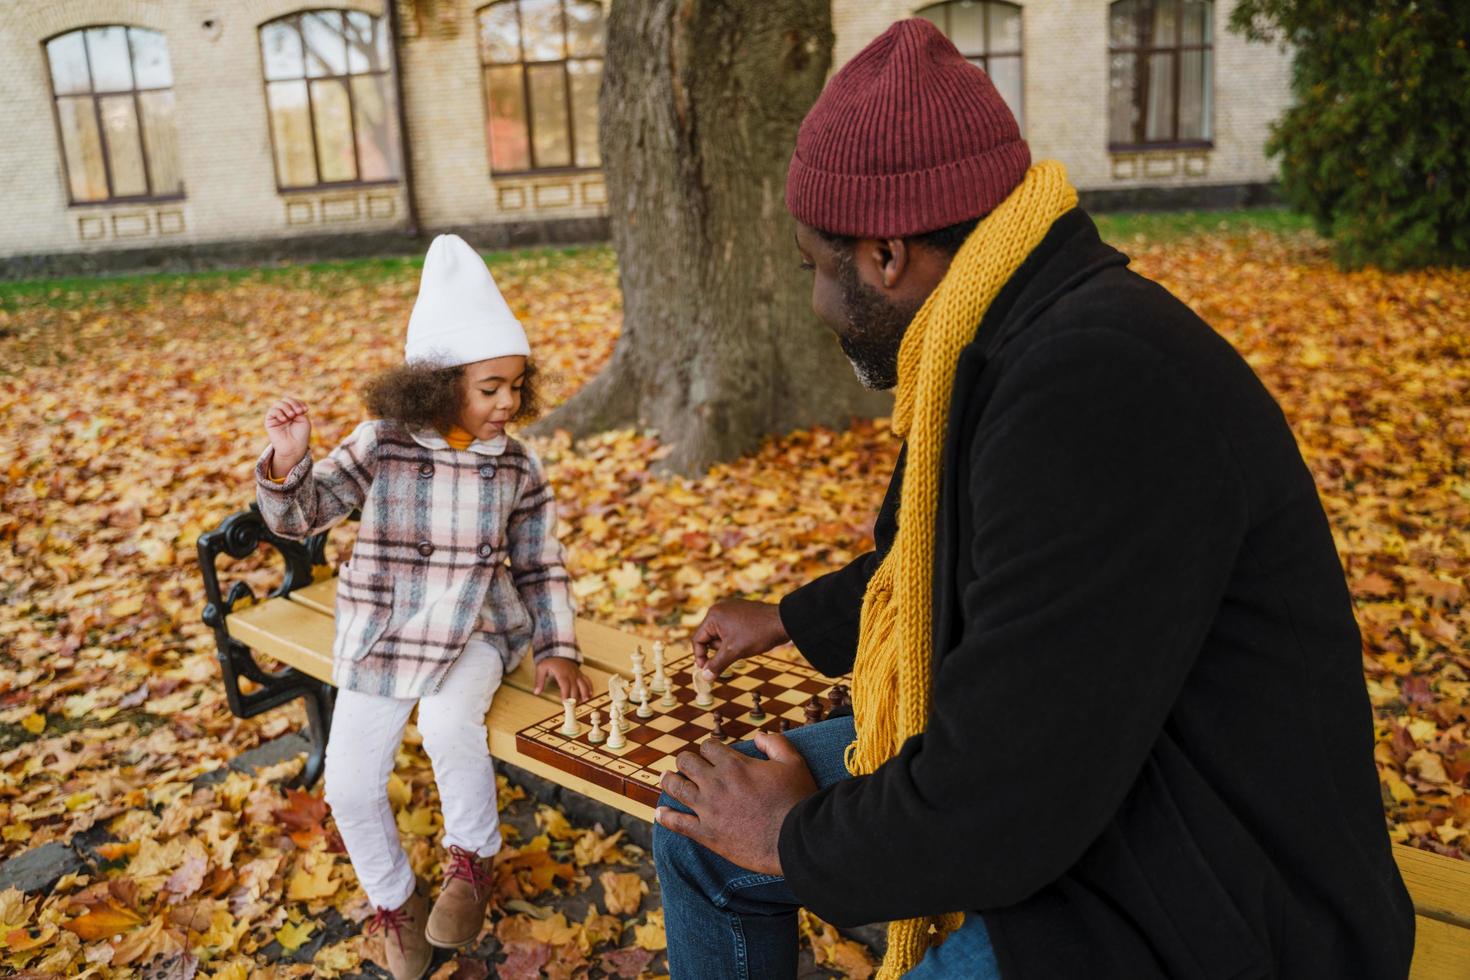 avô e neta negros jogando xadrez no outono park foto